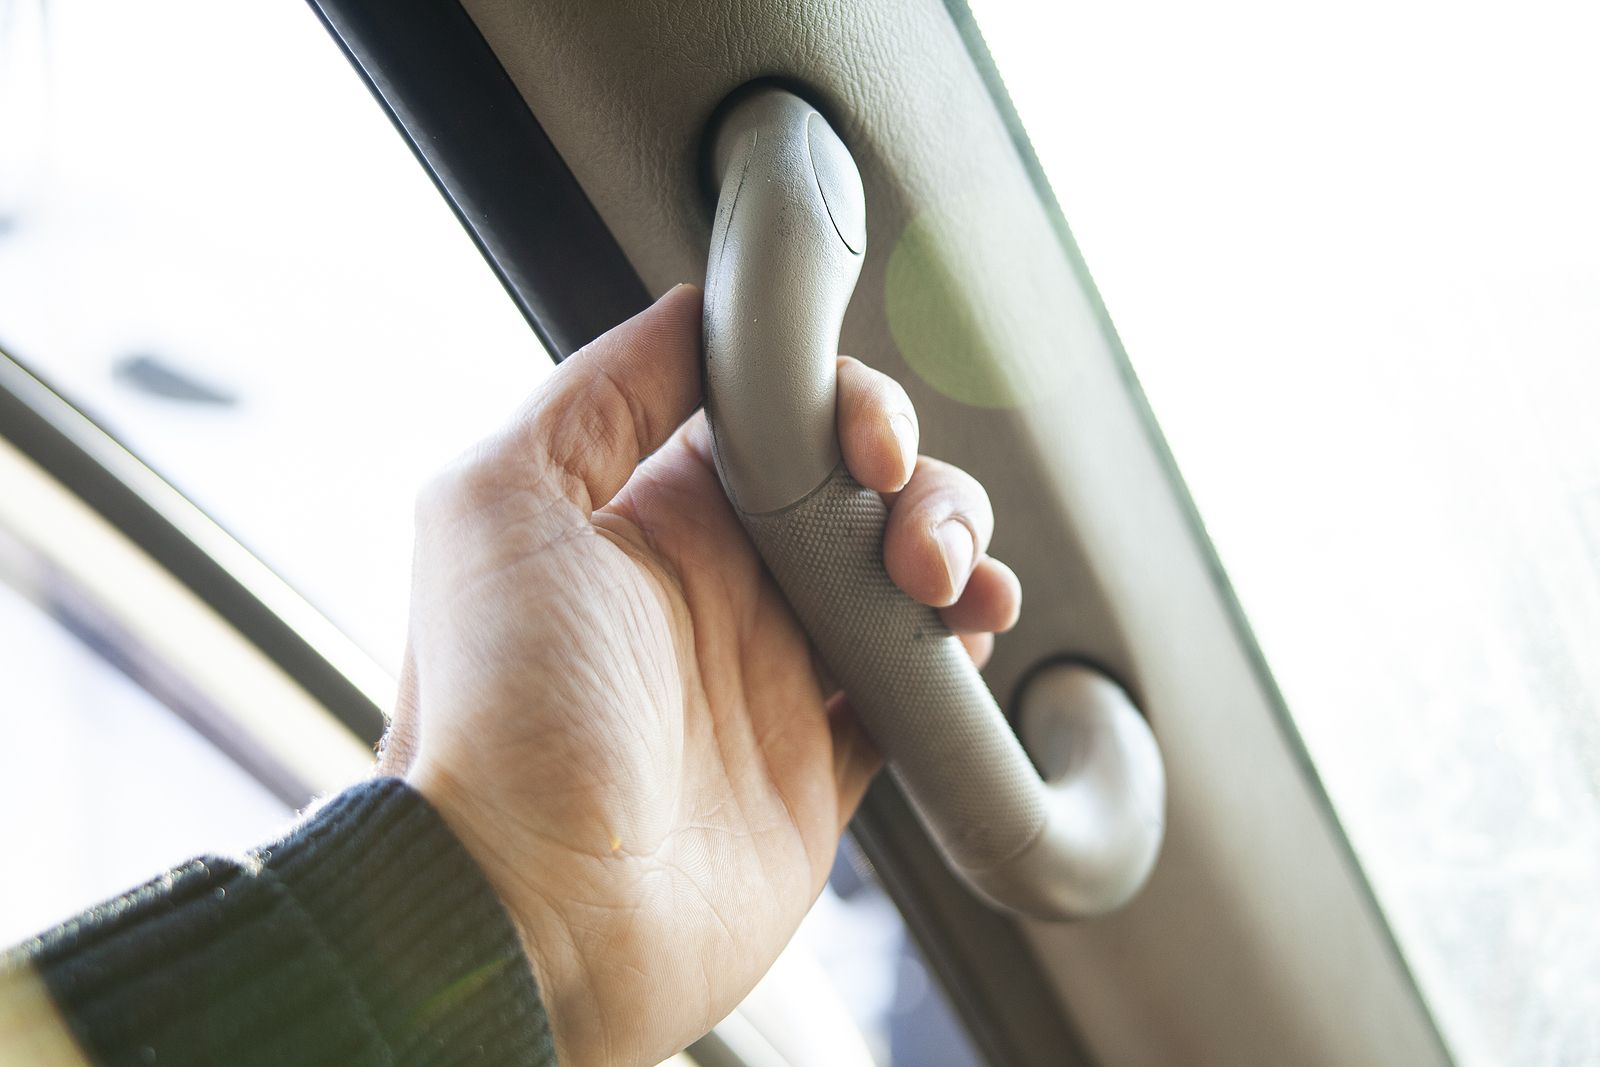 El truco para usar correctamente las agarraderas del coche que seguramente no conocías